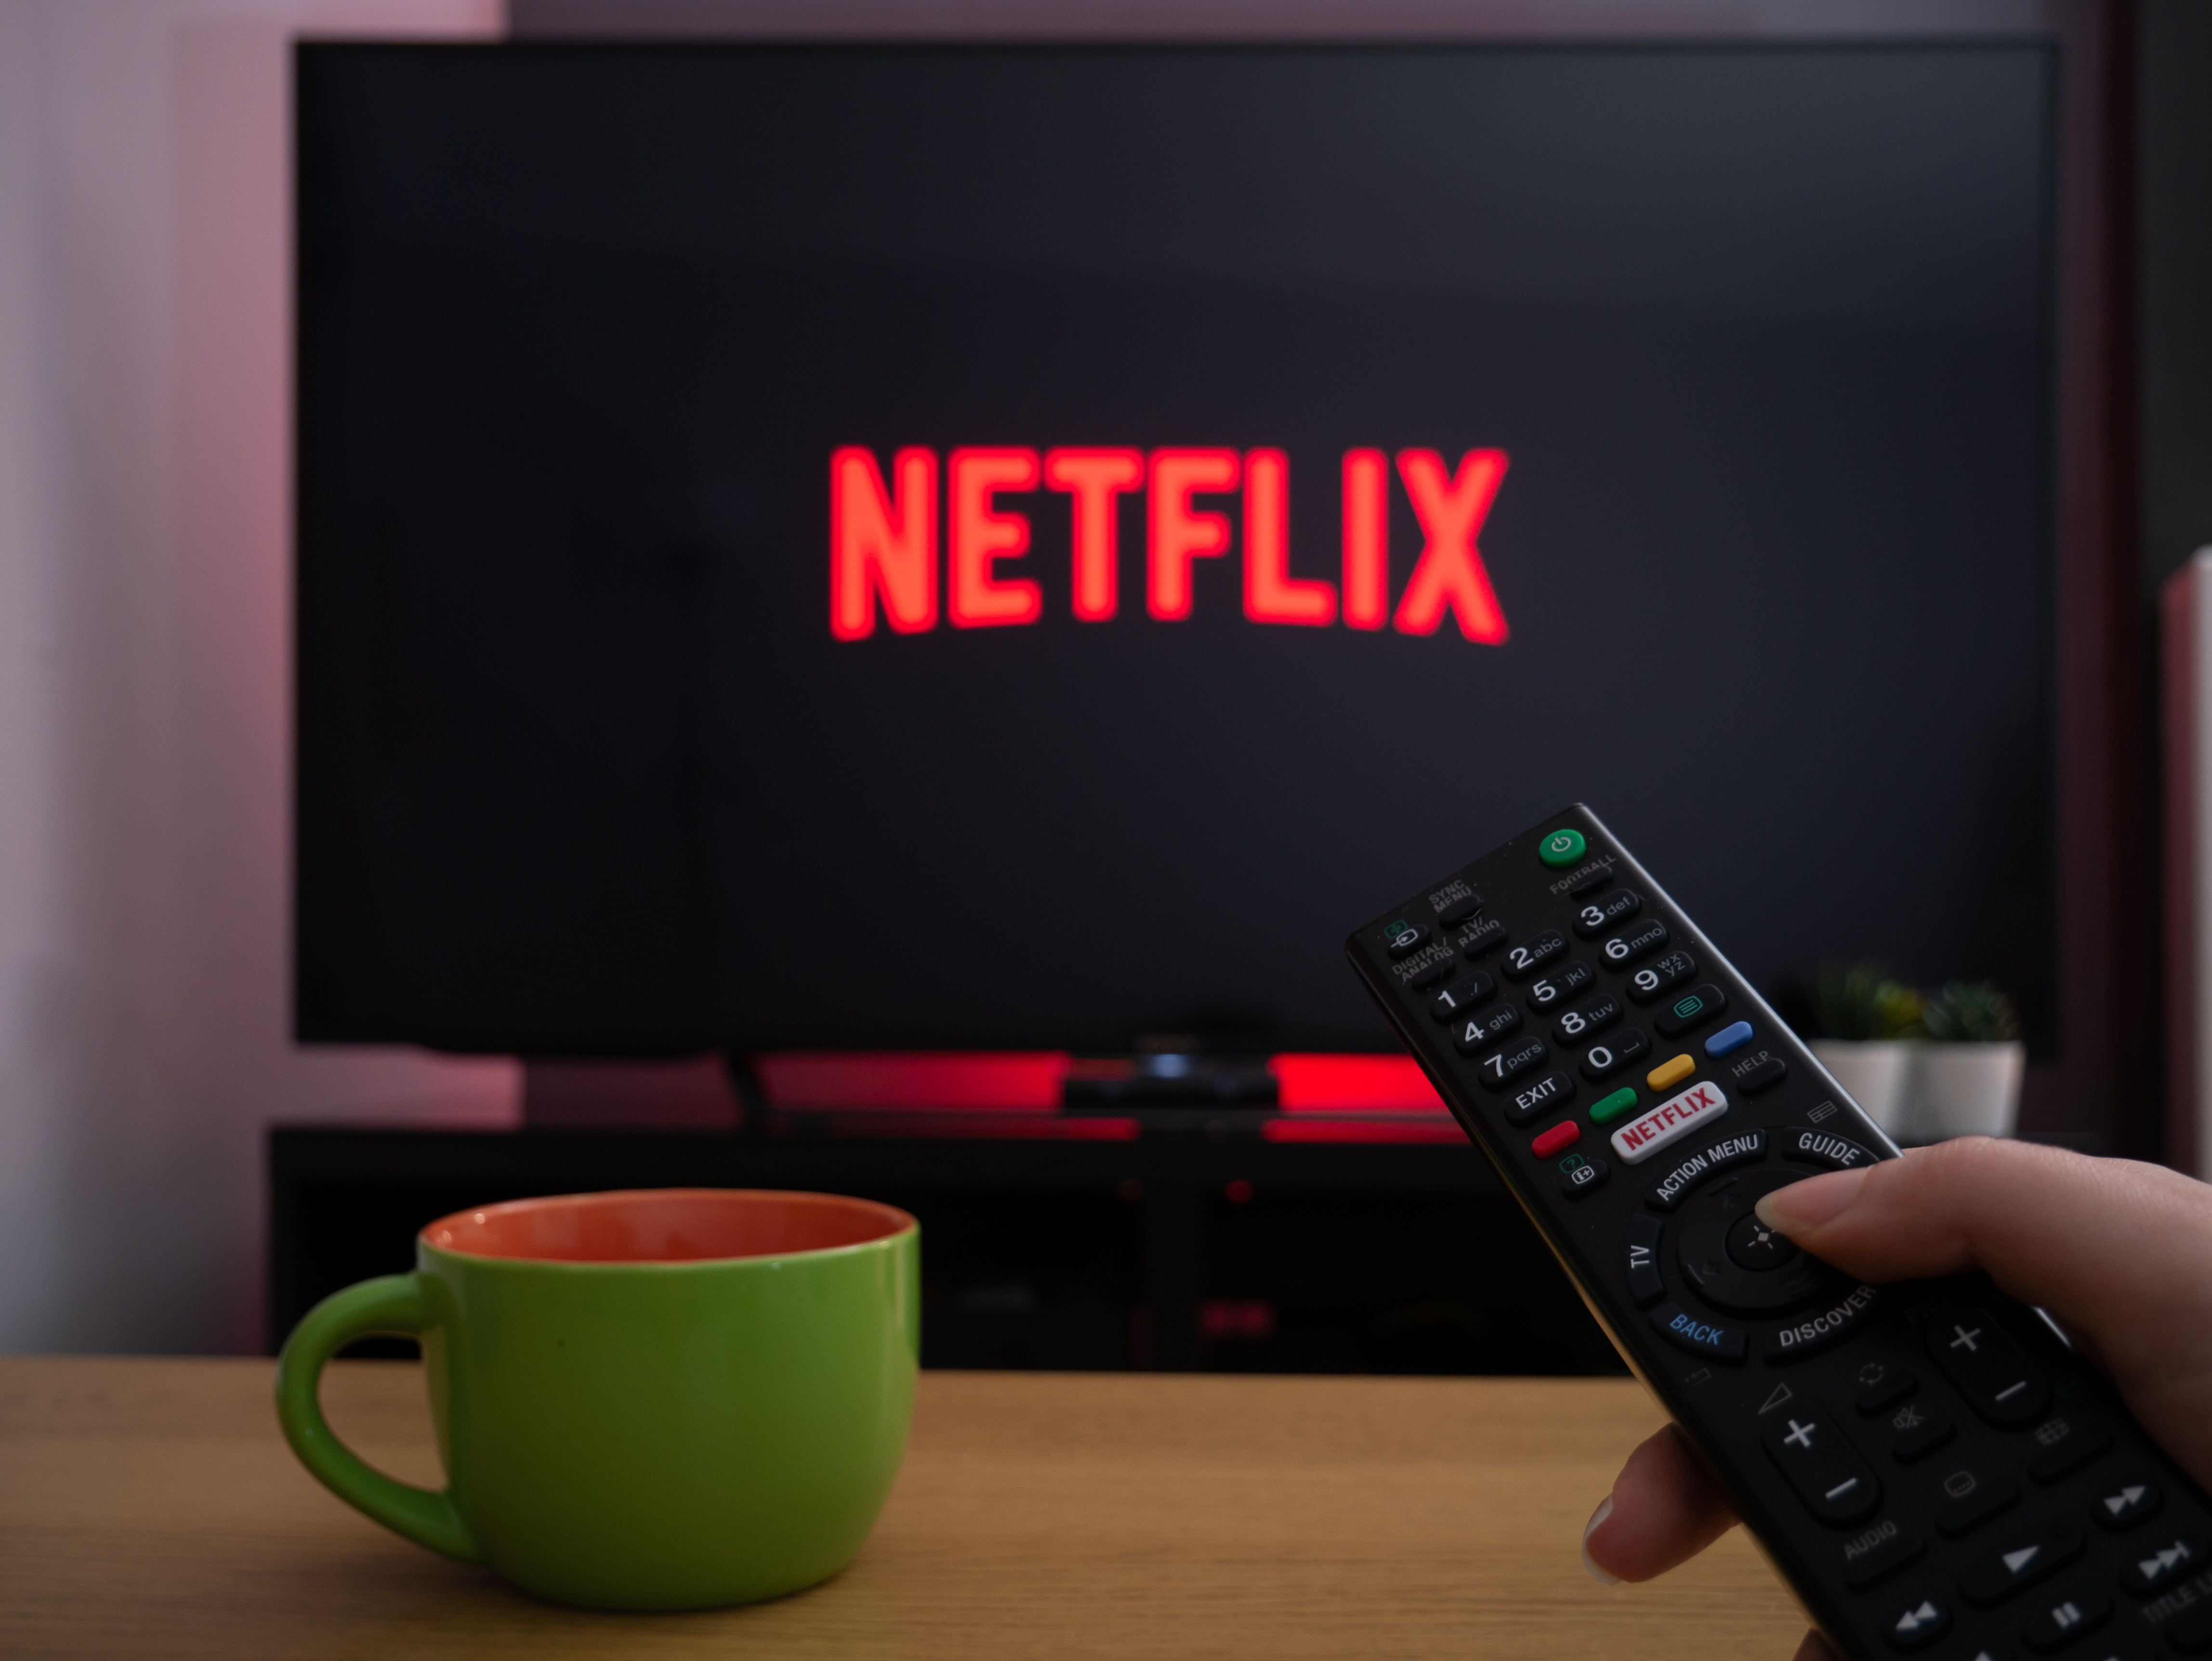 Los 29 códigos secretos para ver películas y series ocultas en Netflix